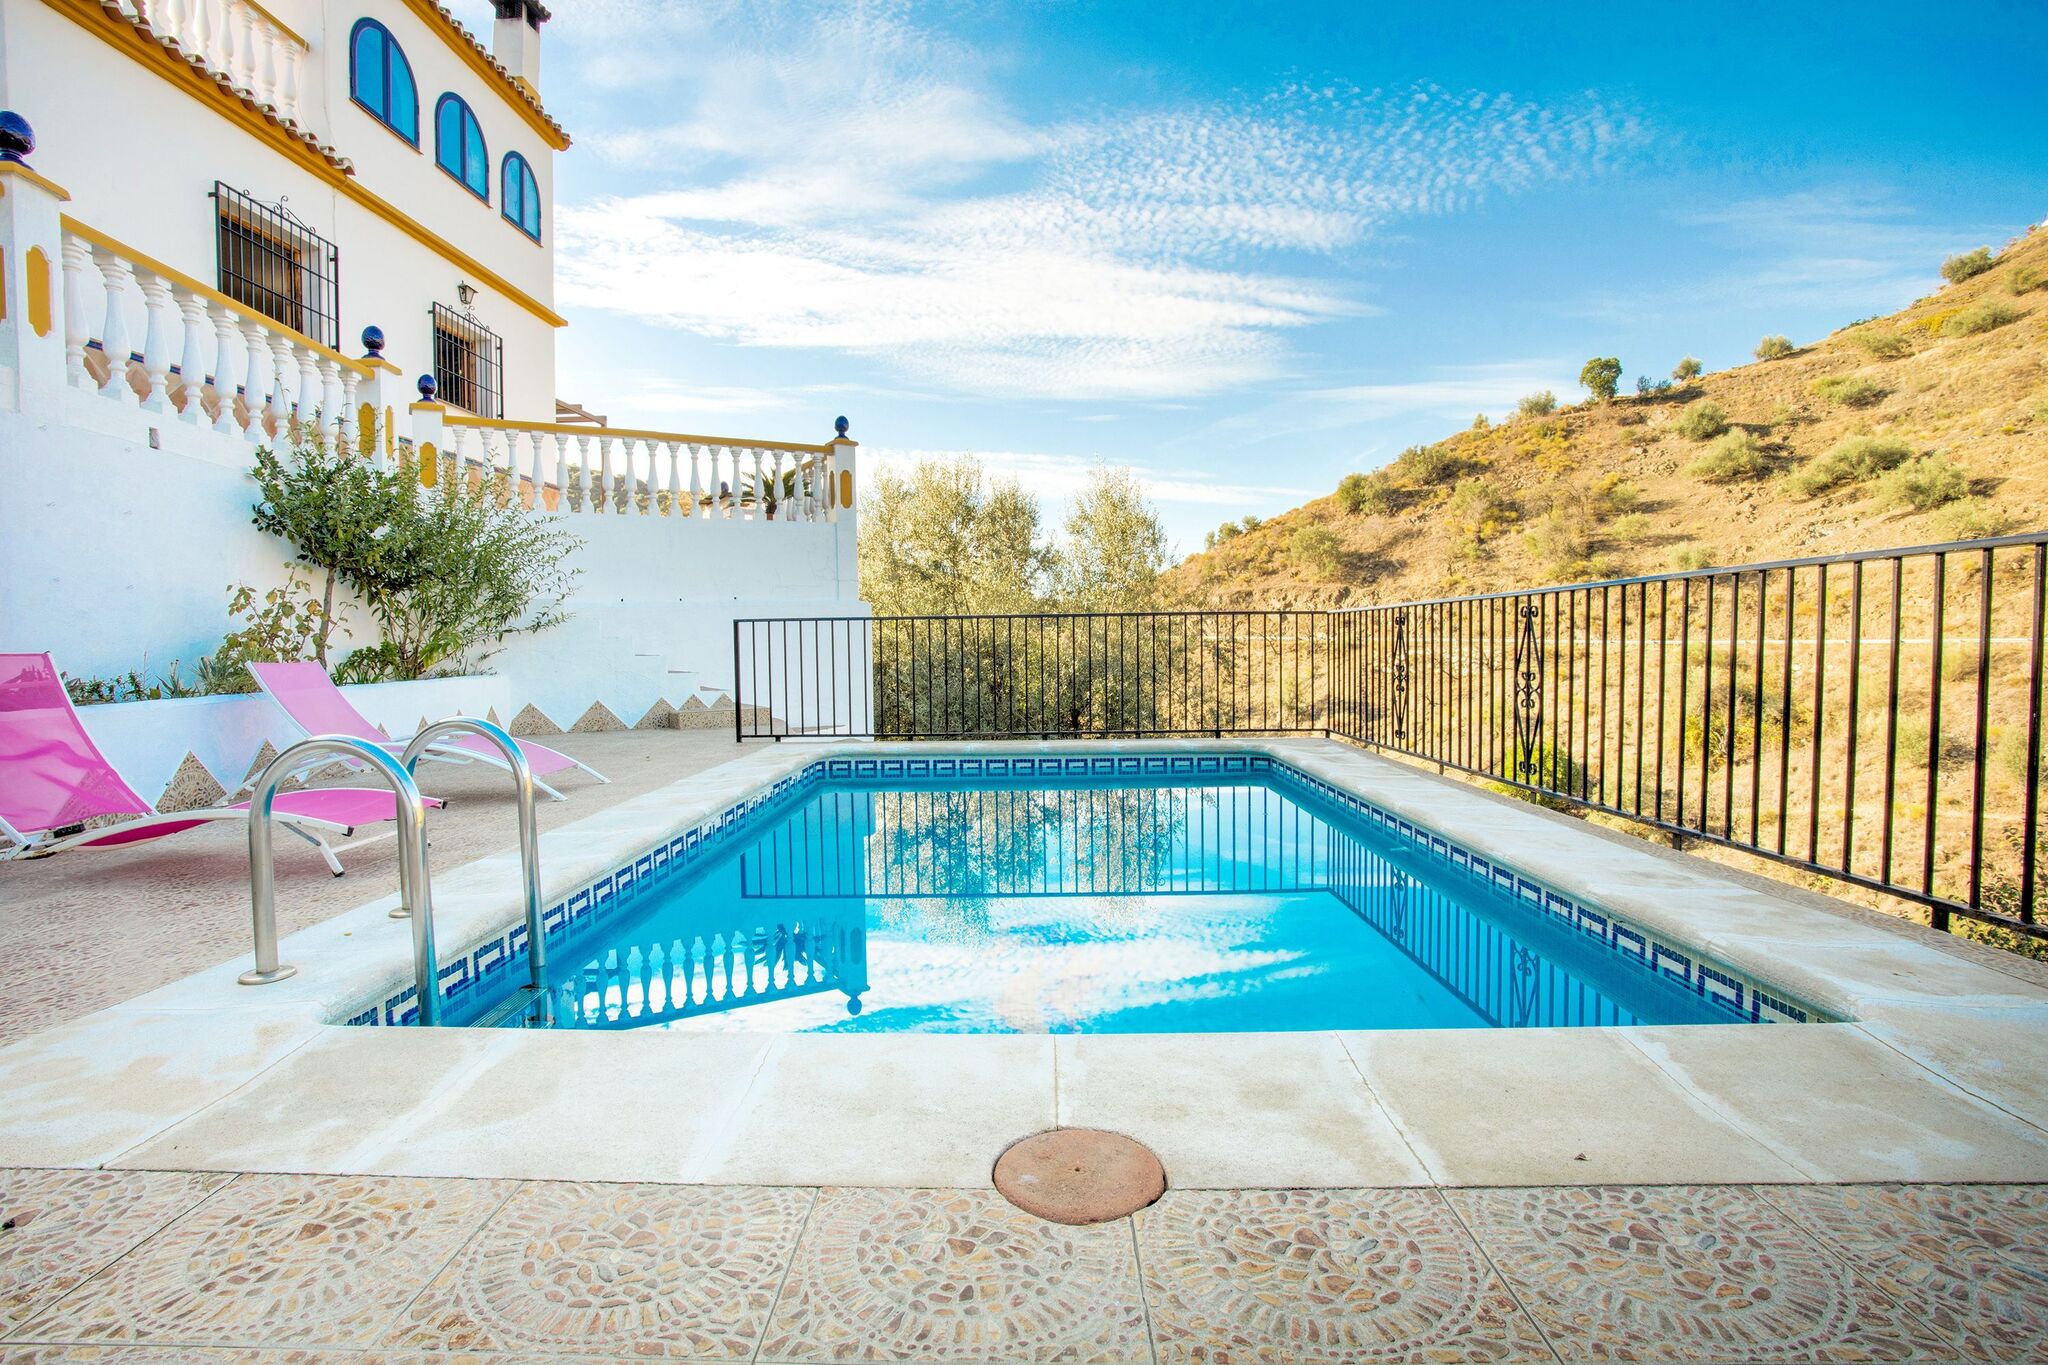 Maison de vacances isolée à Malaga avec piscine privée